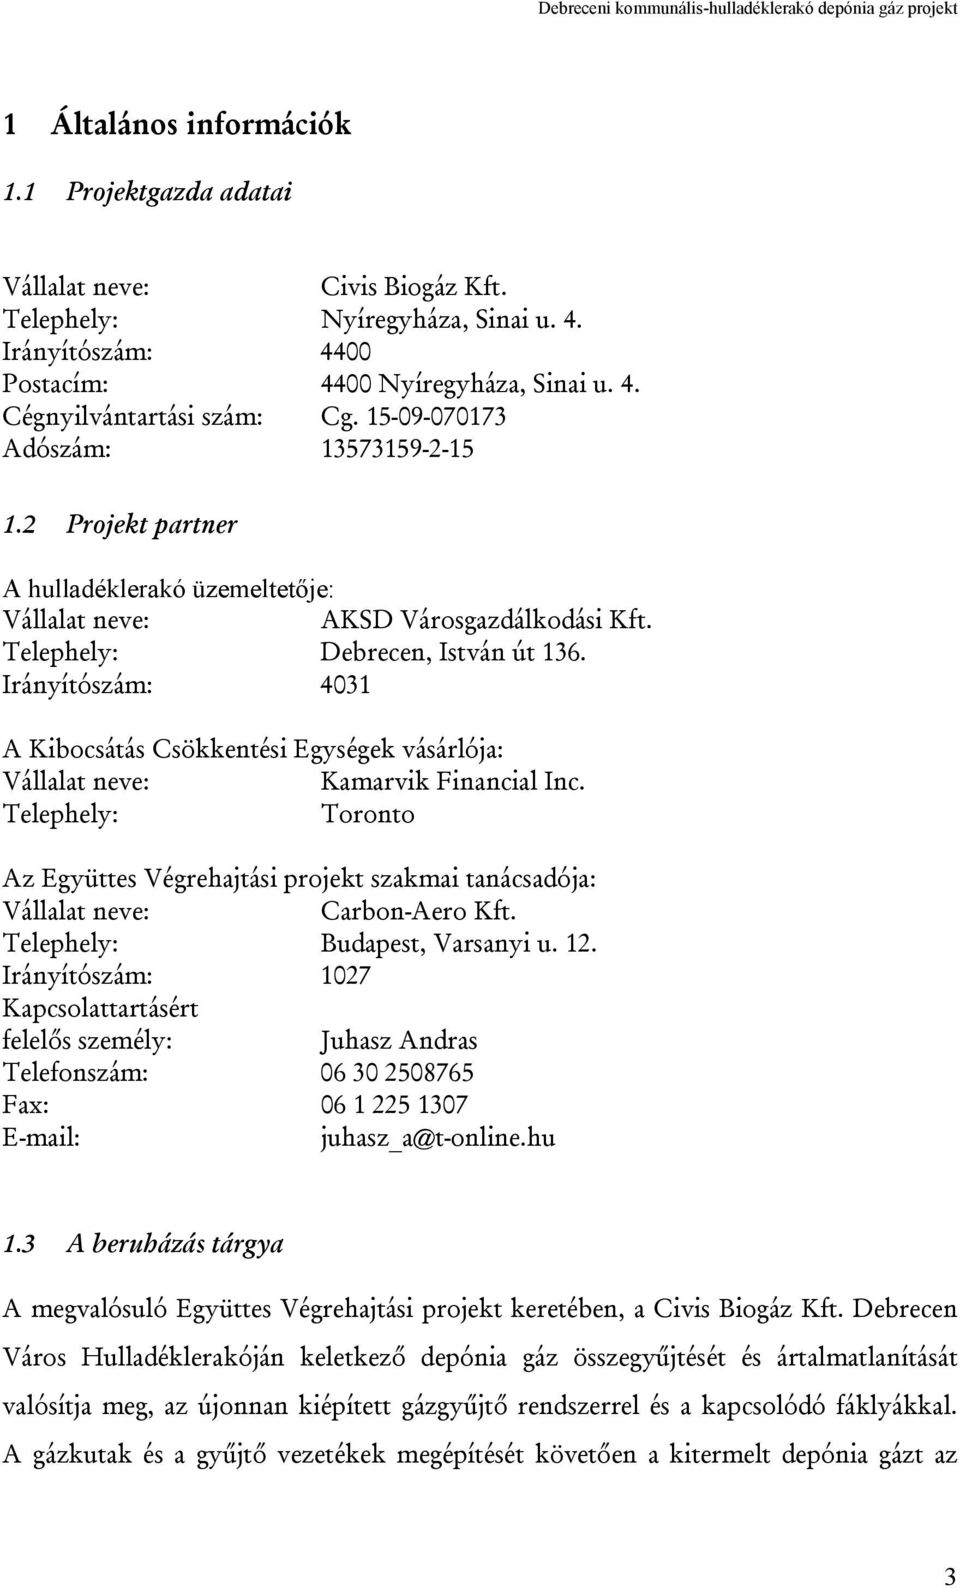 Irányítószám: 4031 A Kibocsátás Csökkentési Egységek vásárlója: Vállalat neve: Kamarvik Financial Inc.